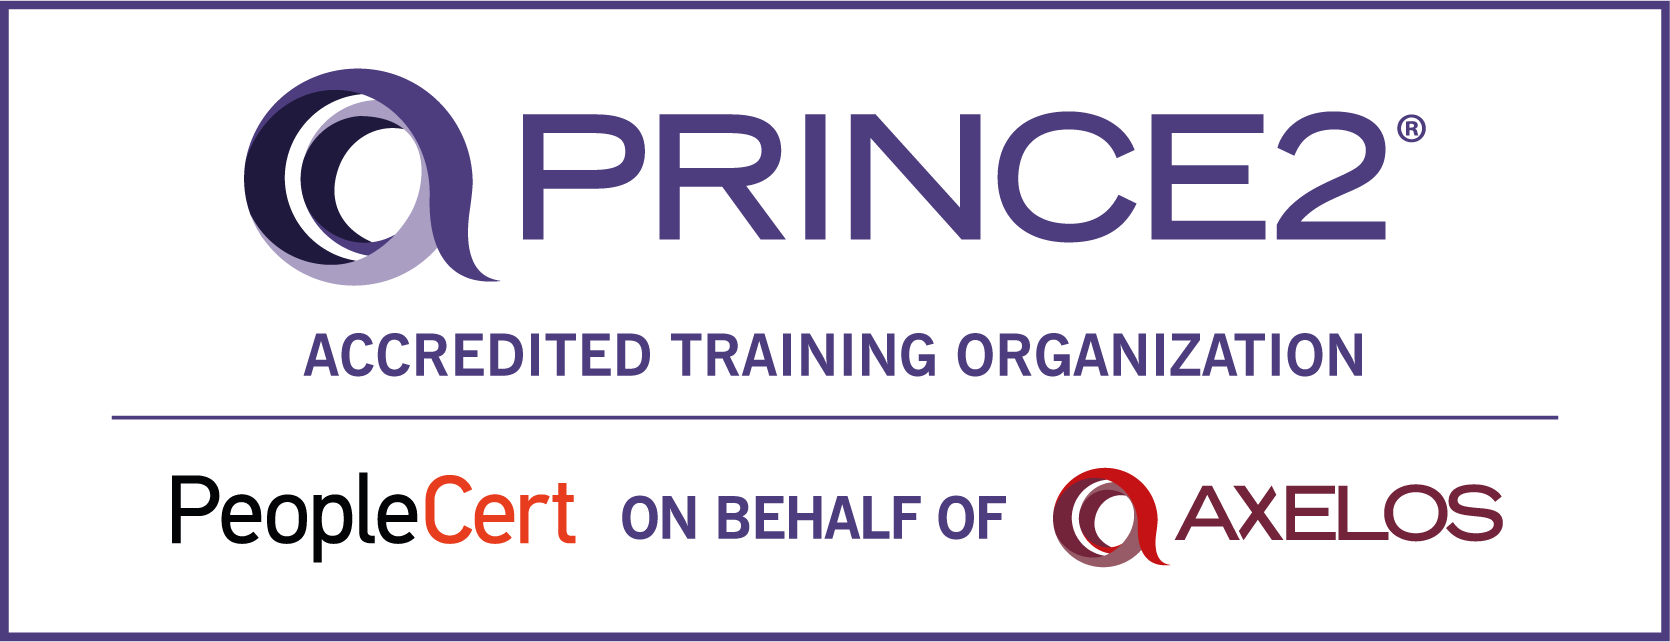 PRINCE2 ATO logo